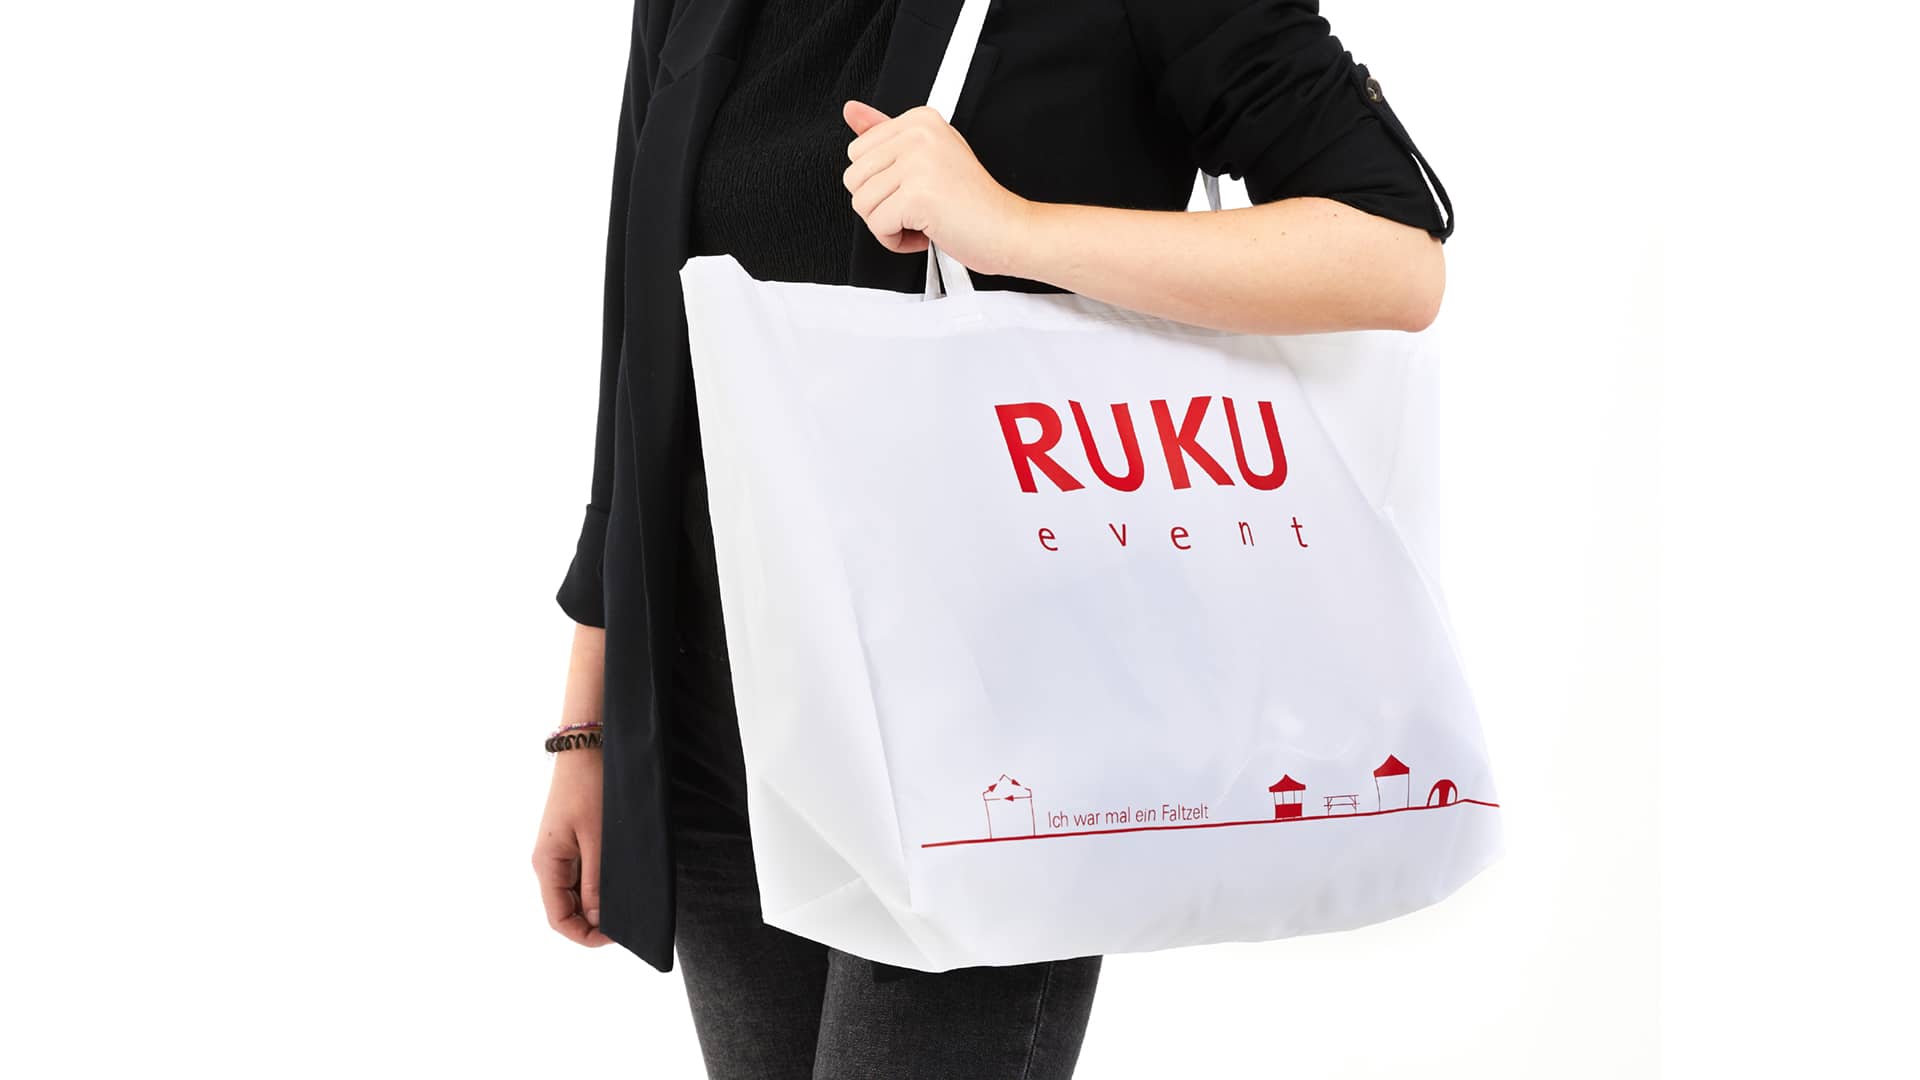 Die nachhaltige RUKUevent Einkaufstasche in der Farbe weiß wird von einer Person um die Schulter getragen.